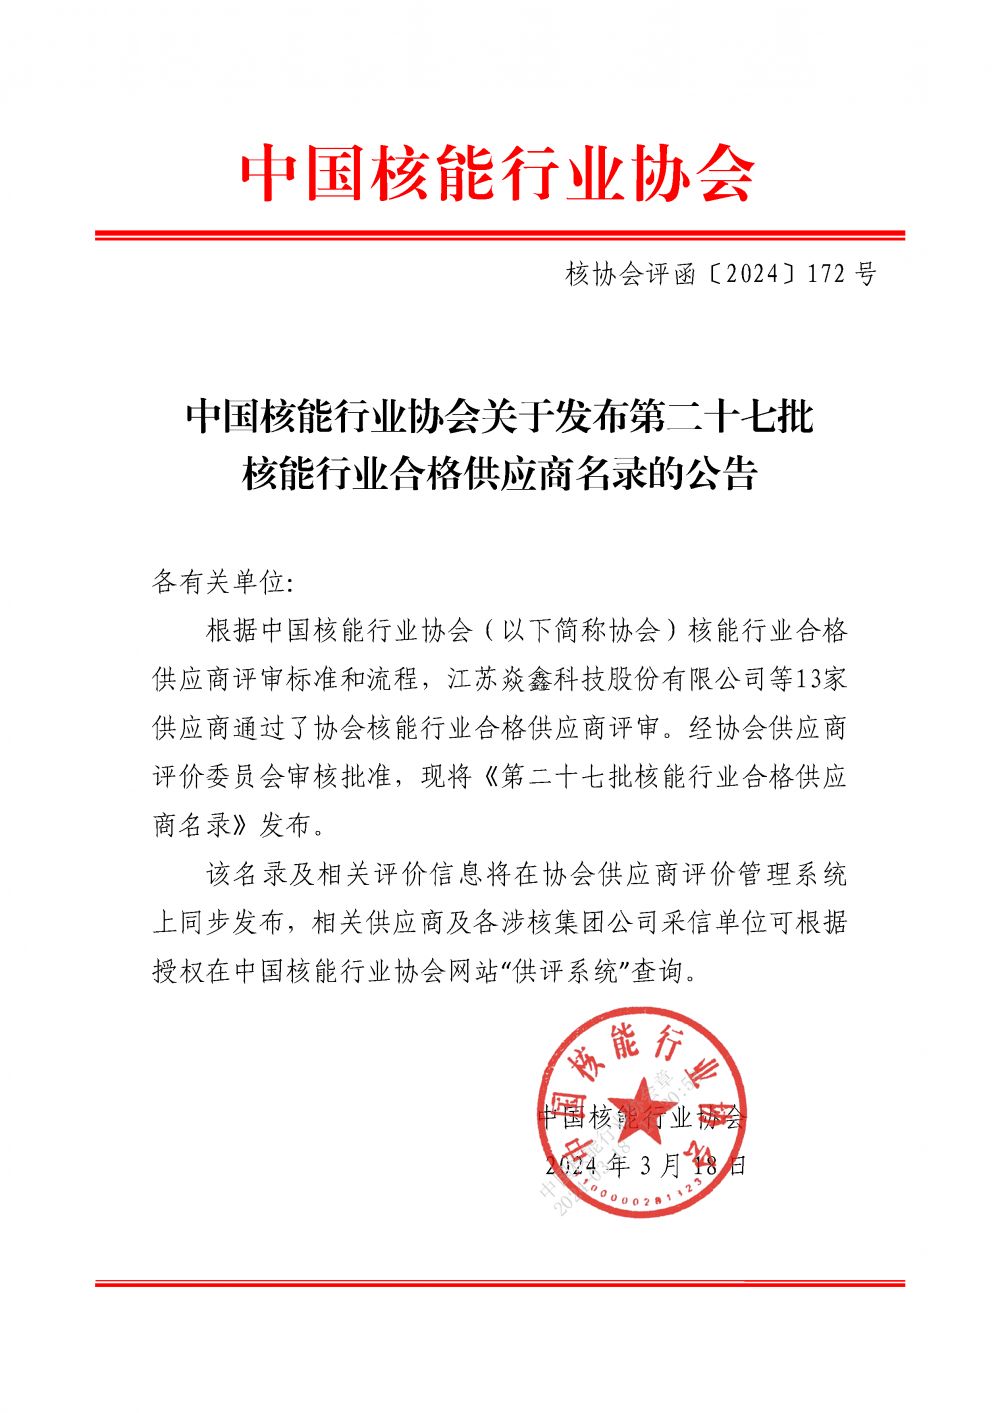 中国核能行业协会关于发布第二十七批核能行业合格供应商名录的公告_页面_1.png